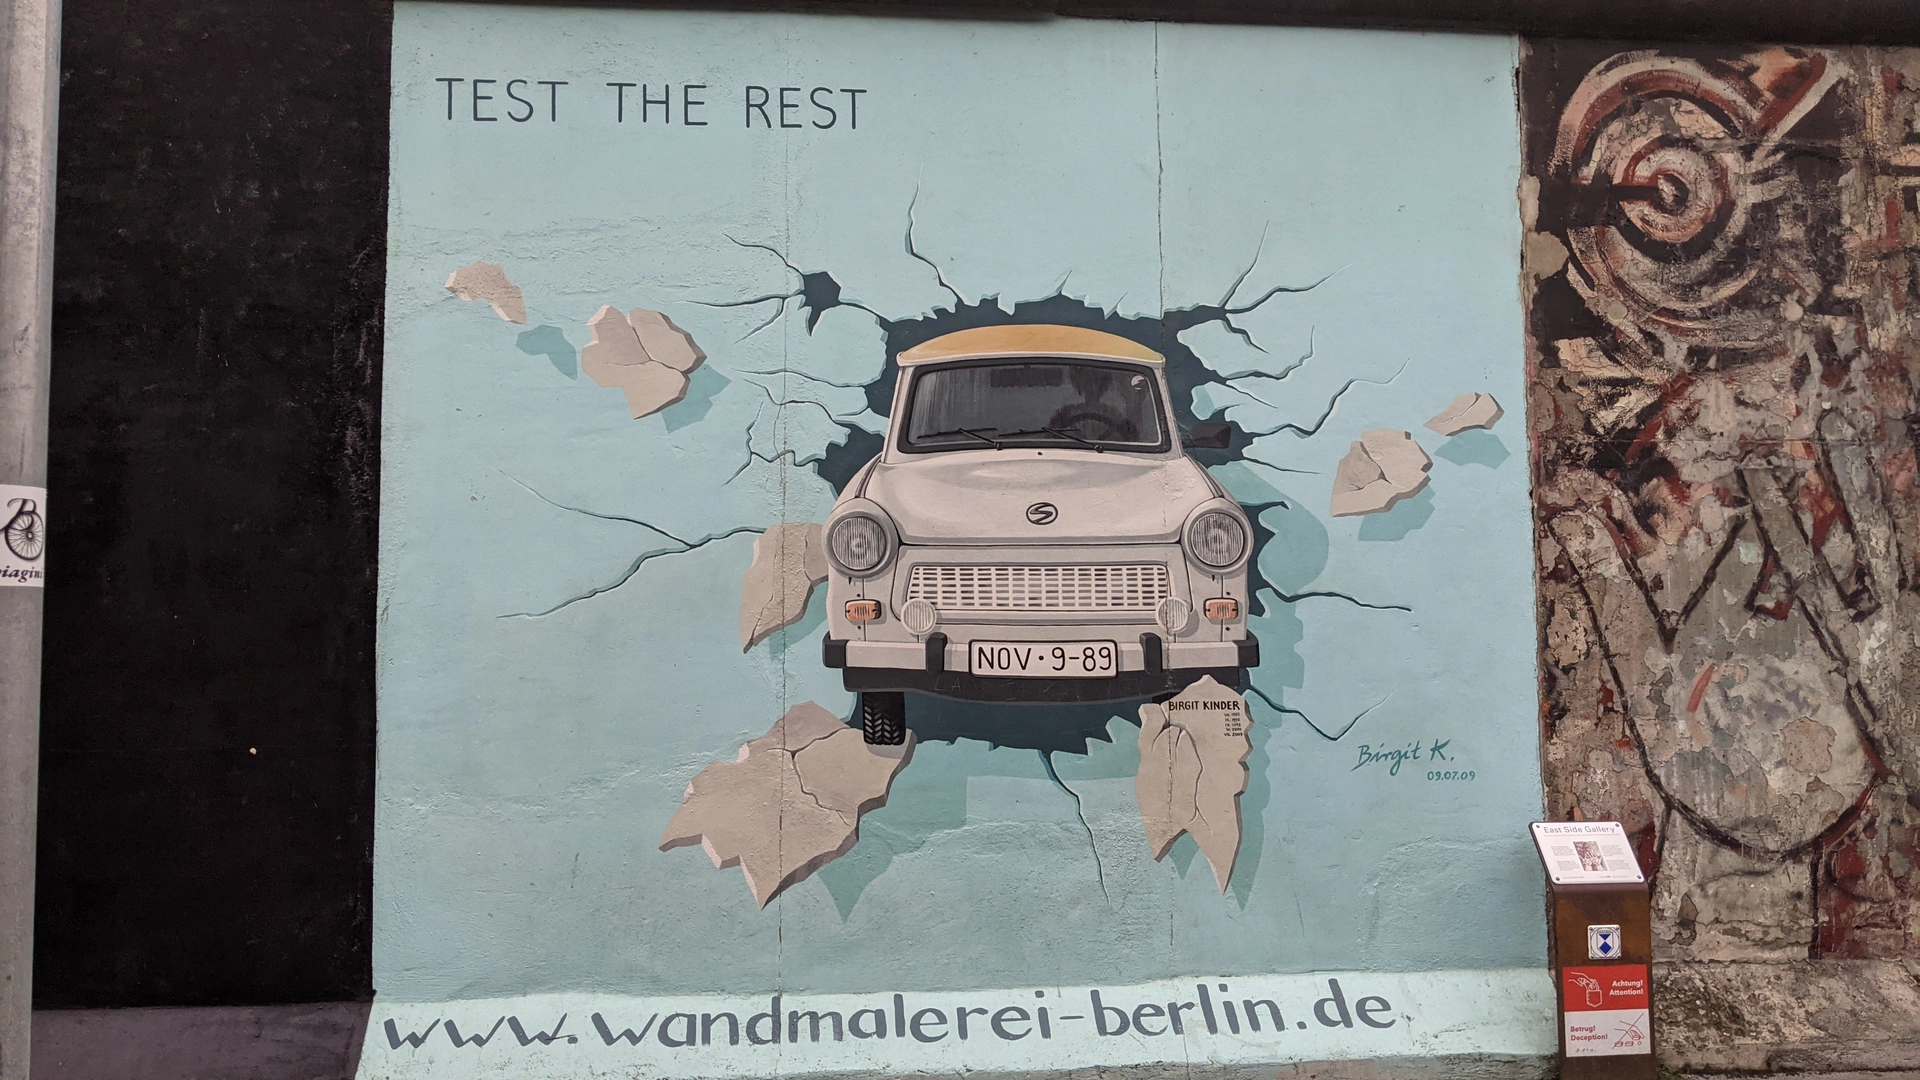 Oeuvre de Street Art réalisée par Birgit Kinder à Berlin